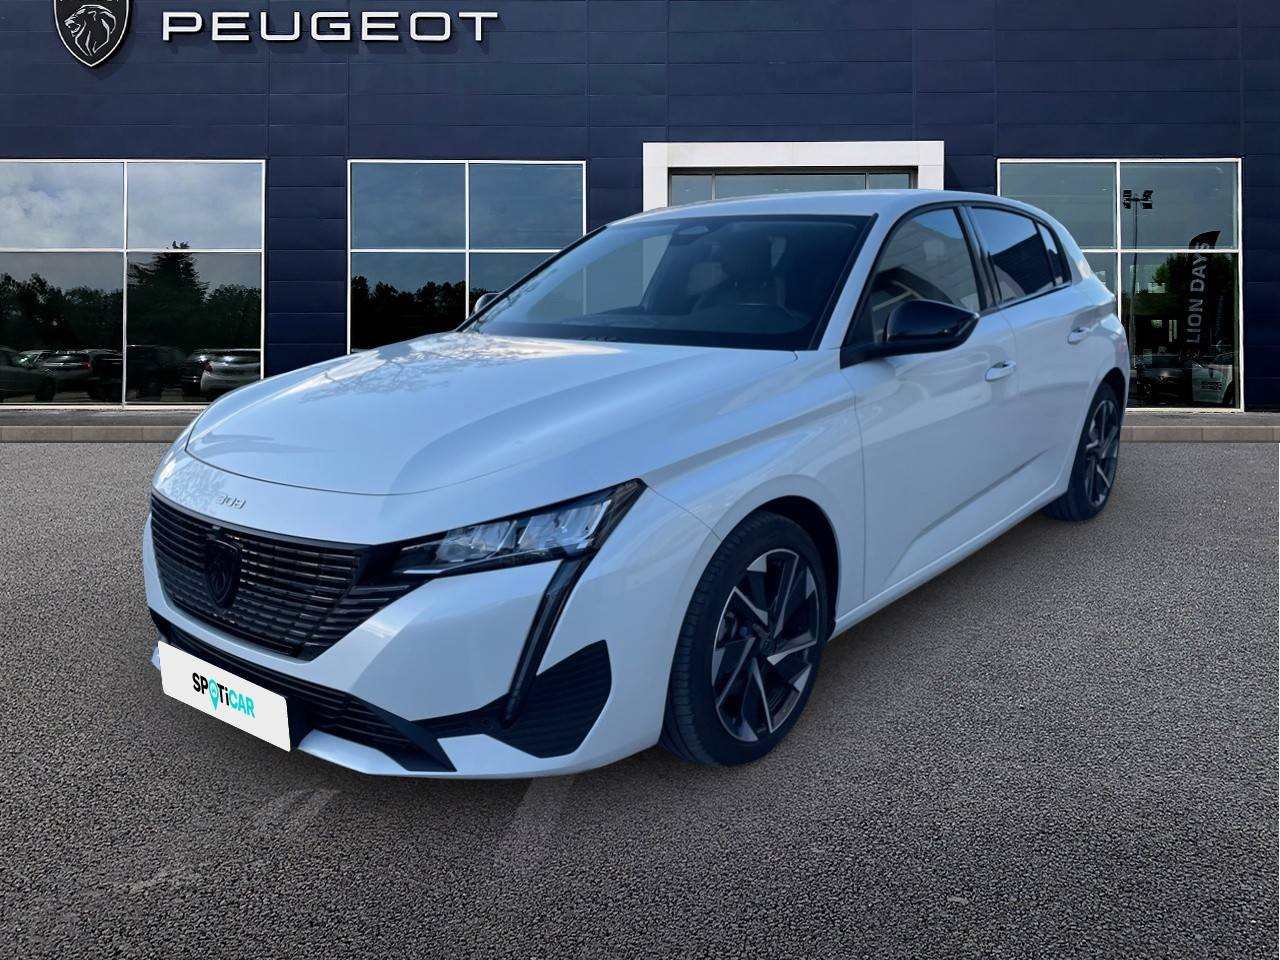 PEUGEOT 308 | 308 BlueHDi 130ch S&S BVM6 occasion - Peugeot Pertuis